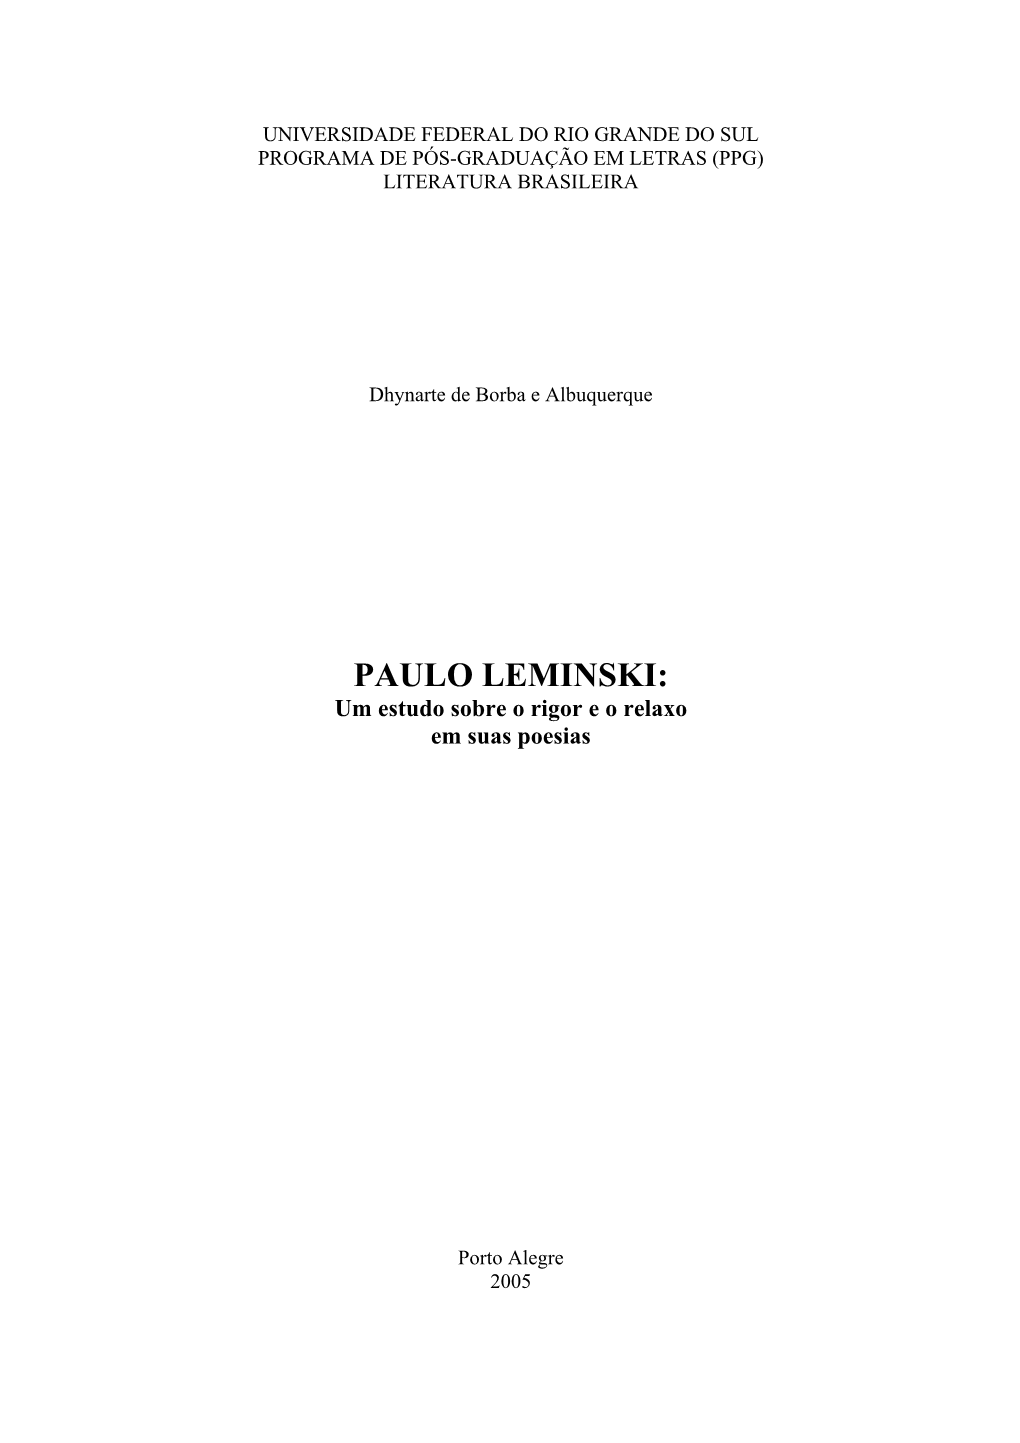 PAULO LEMINSKI: Um Estudo Sobre O Rigor E O Relaxo Em Suas Poesias